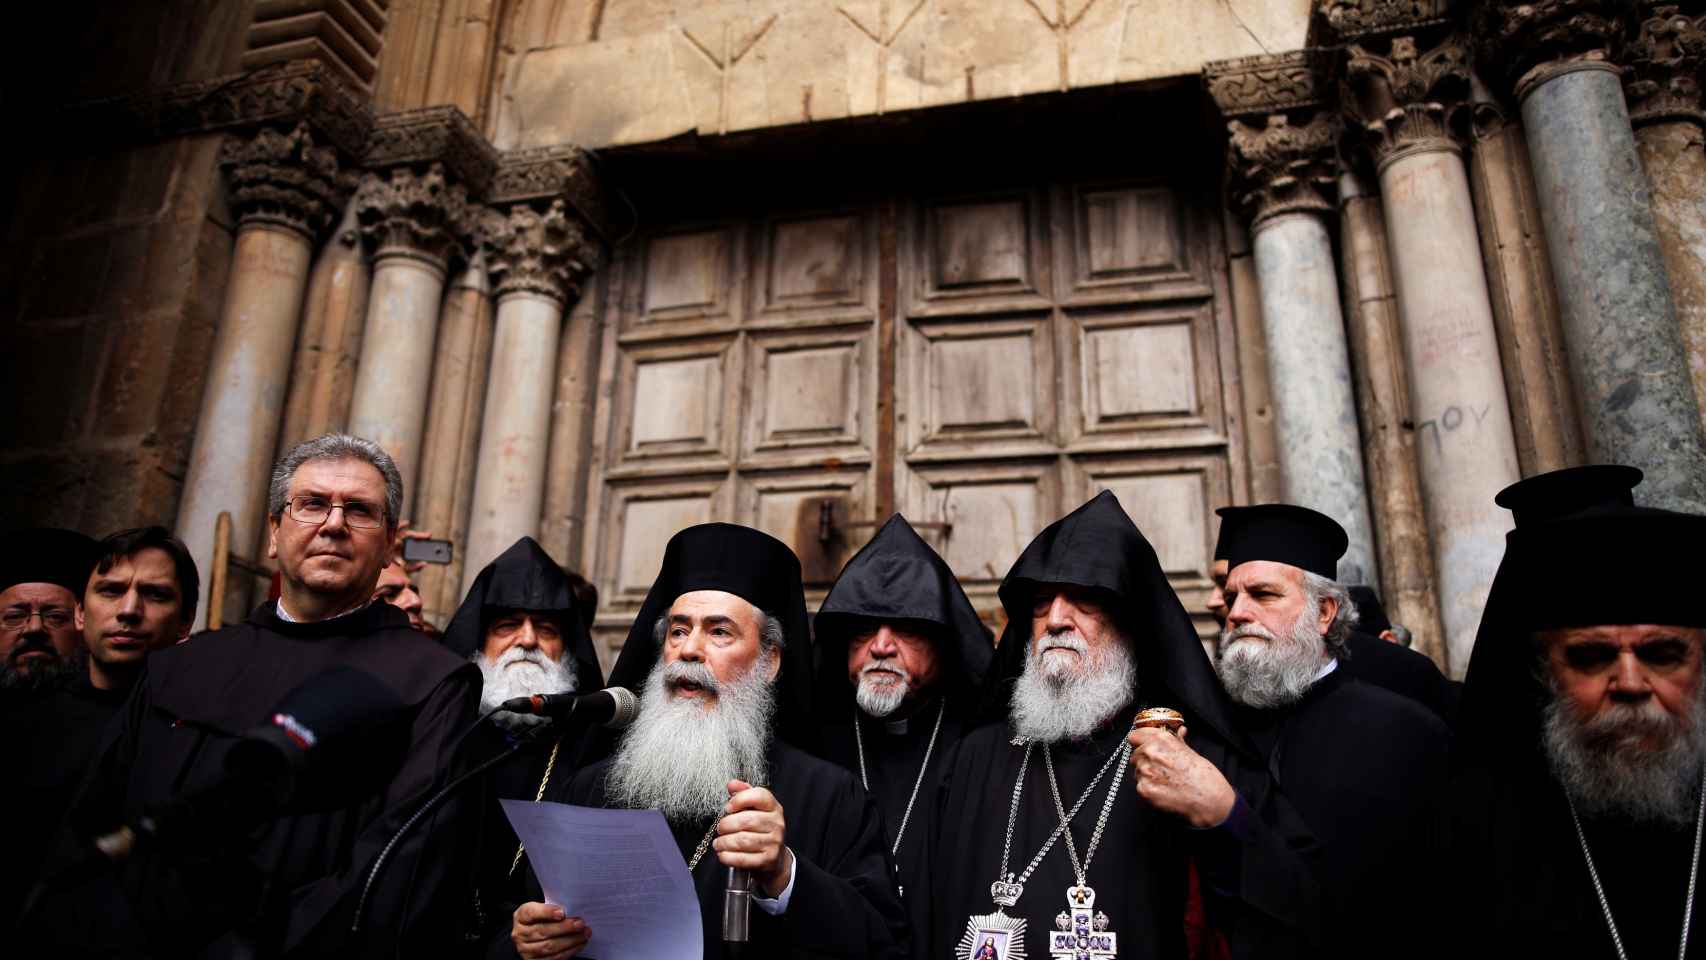 Representantes de las distintas iglesias que han acordado el cierre leen un manifiesto de protesta a las puertas del Santo Sepulcro. Foto: Reuters